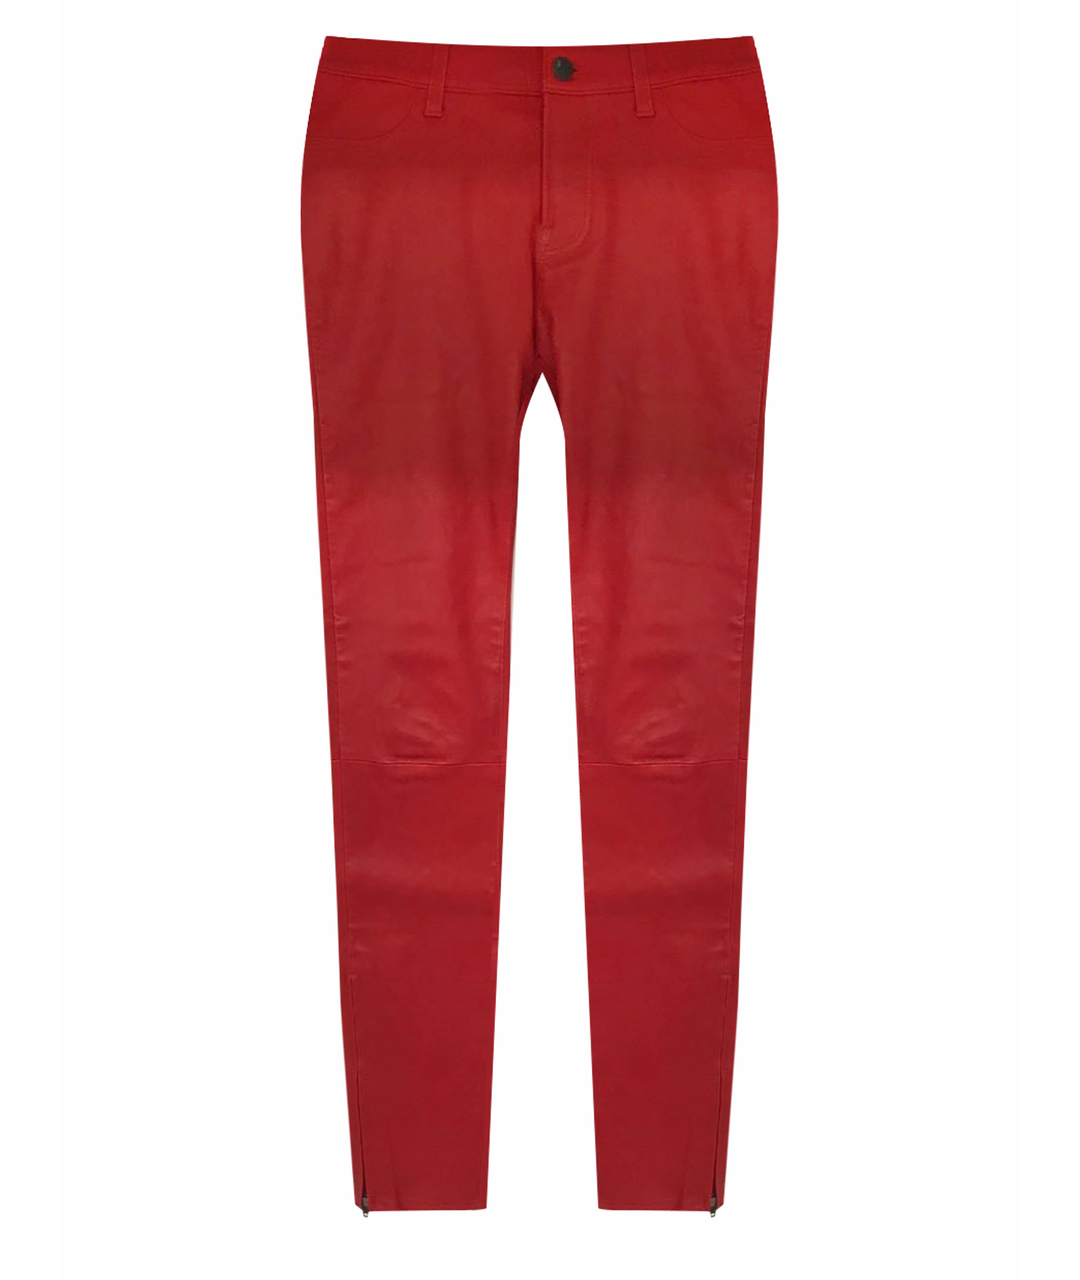 JBRAND Красные кожаные брюки узкие, фото 1